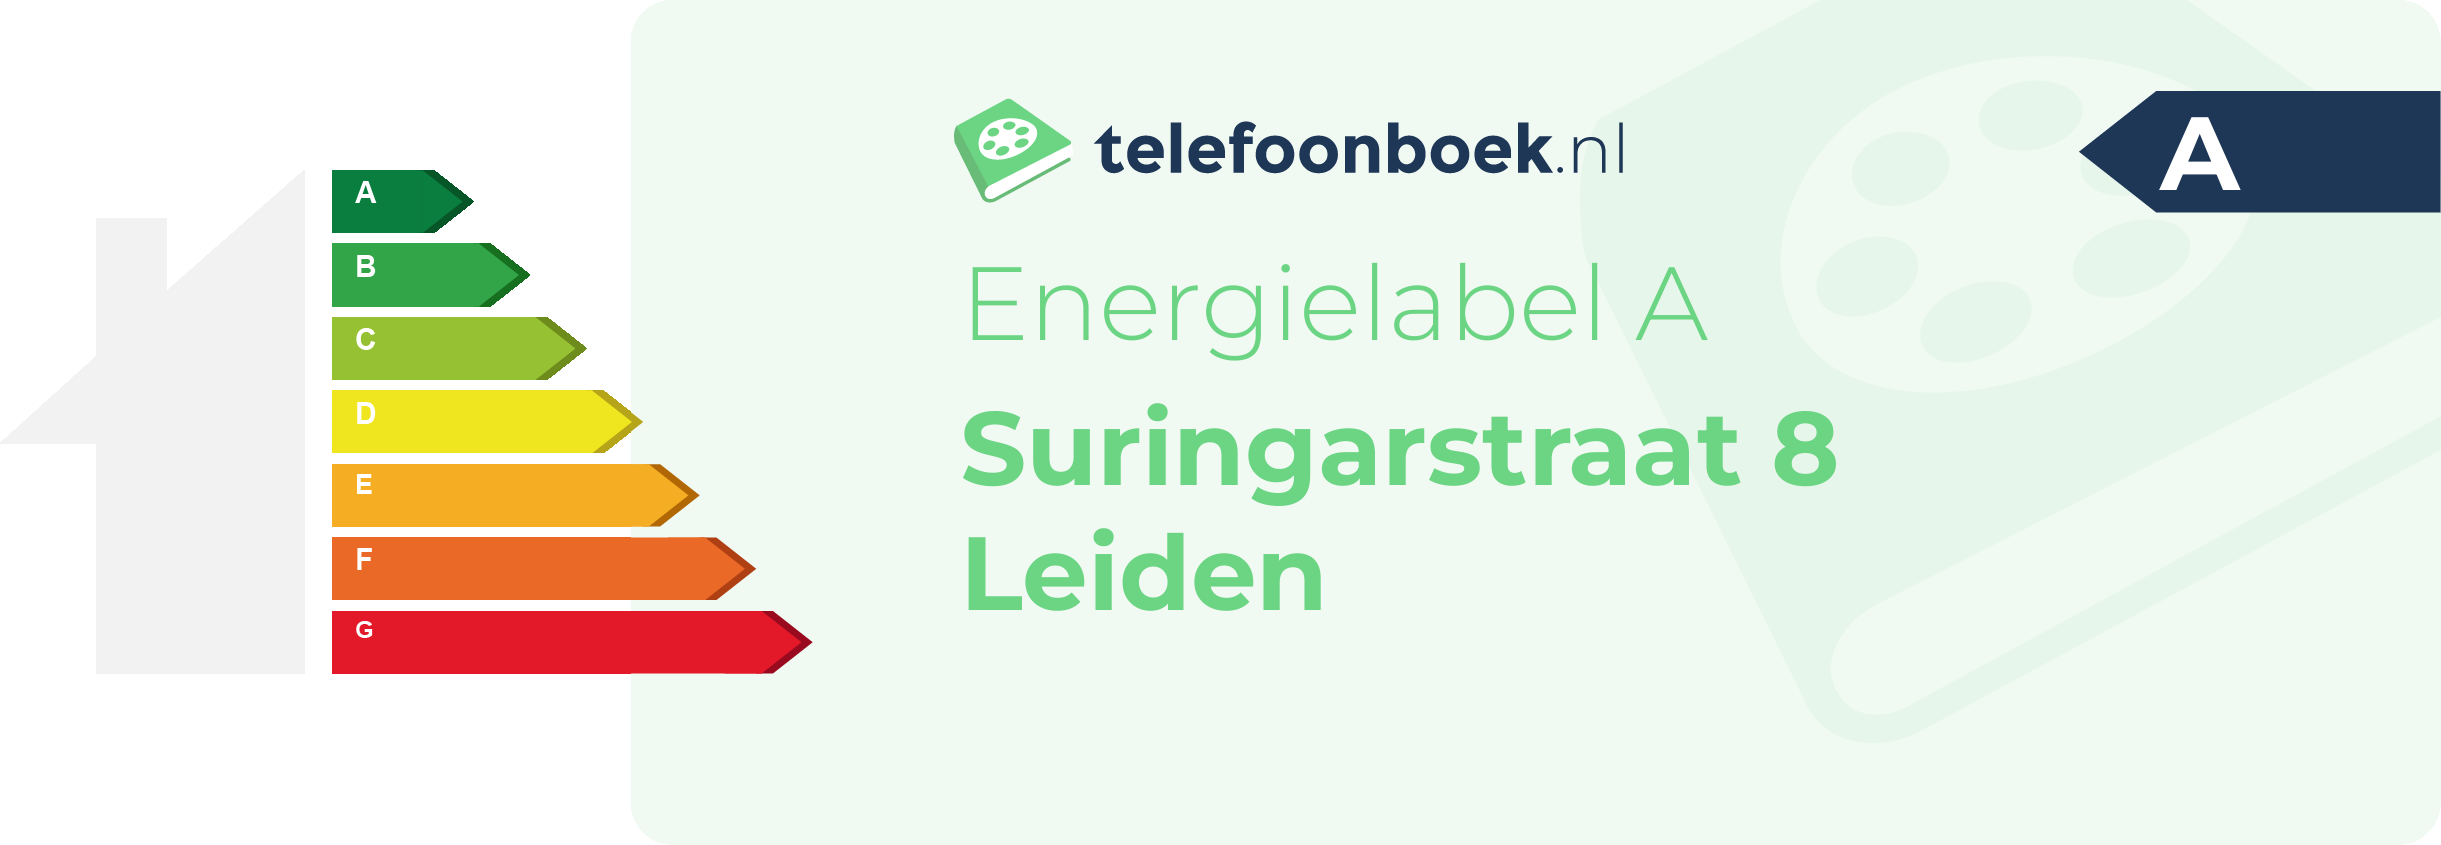 Energielabel Suringarstraat 8 Leiden